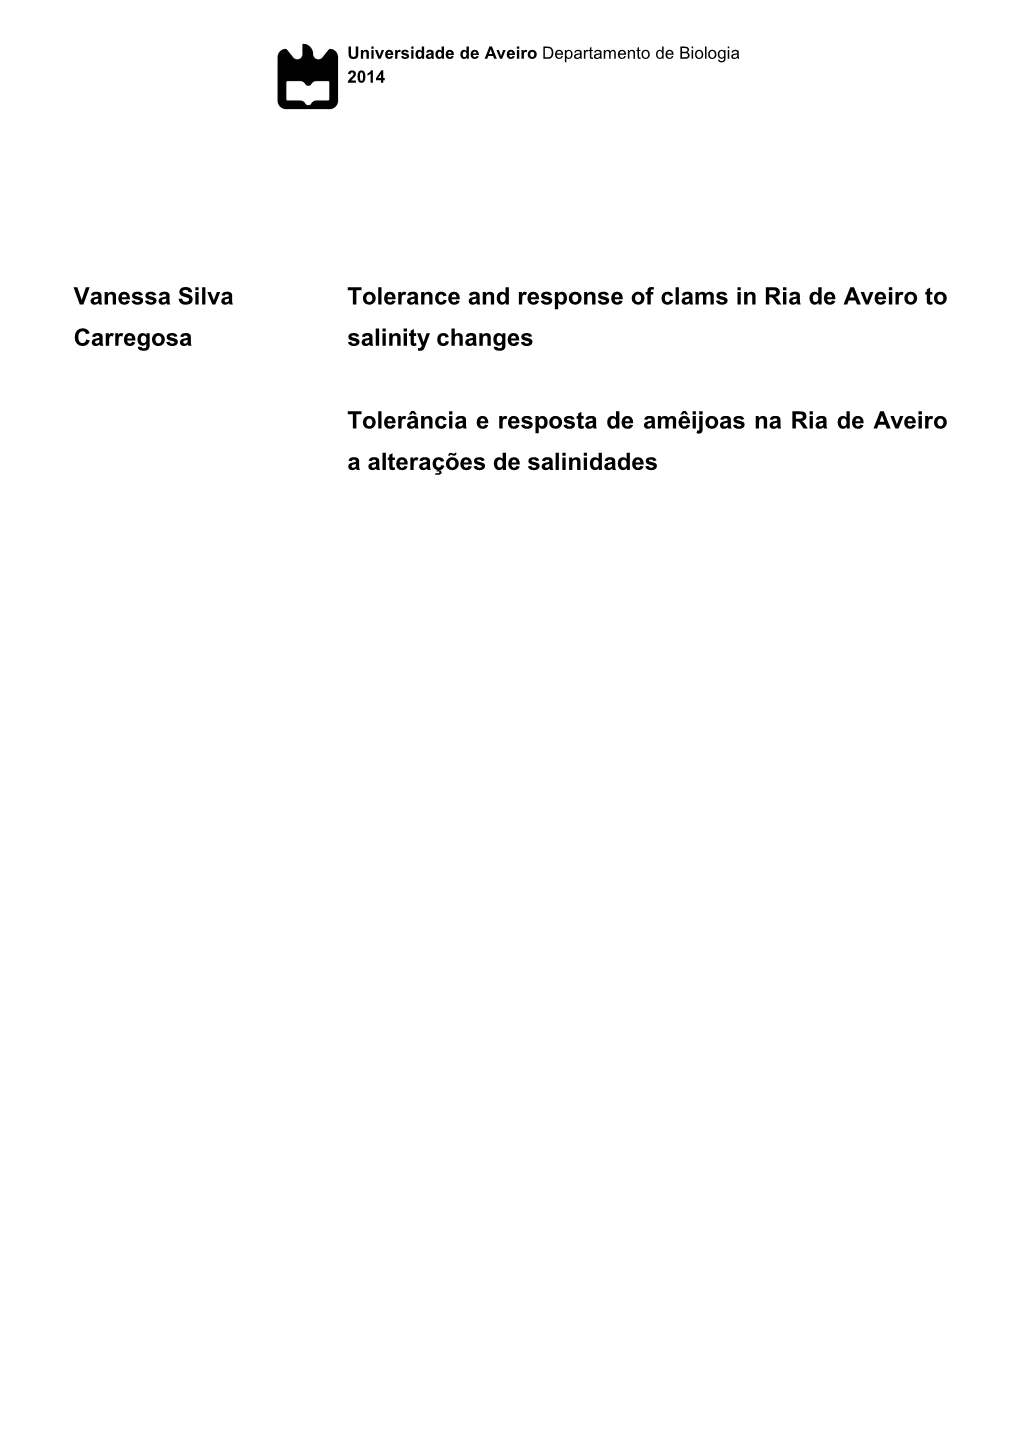 Vanessa Silva Carregosa Tolerance and Response of Clams in Ria De